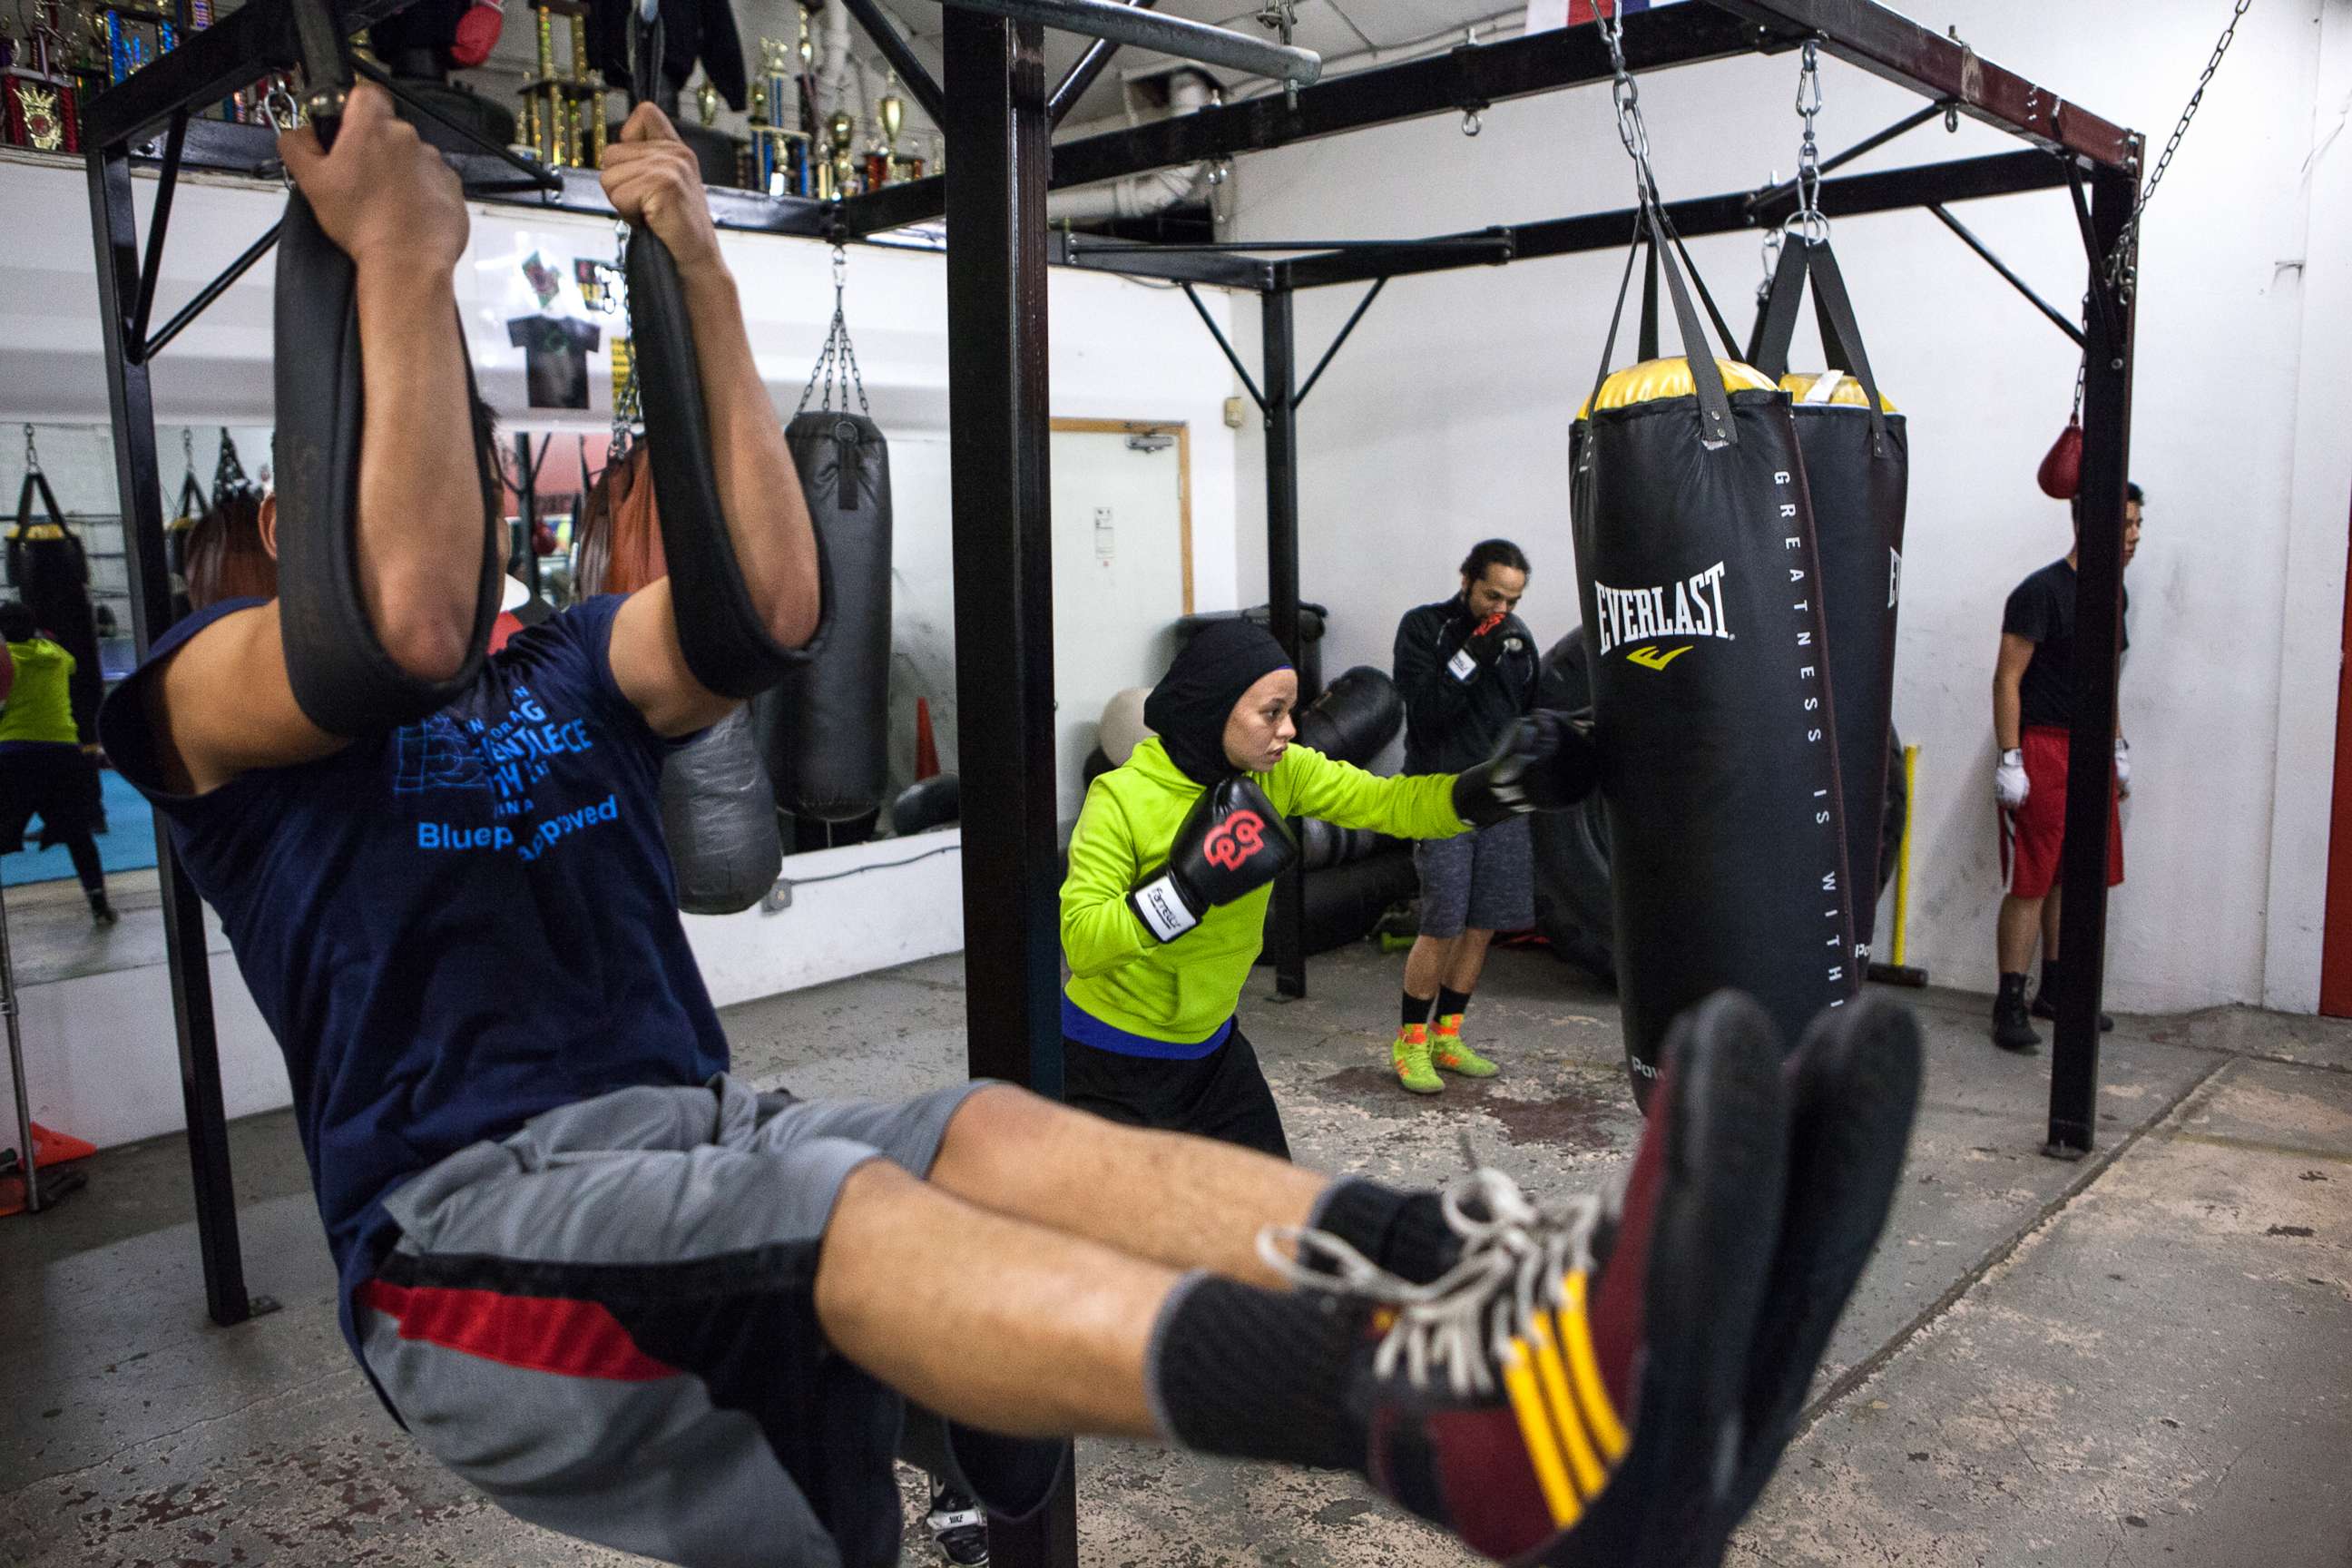 PHOTO: Amaiya Zafar and other boxers train at Circle of Discipline gym.